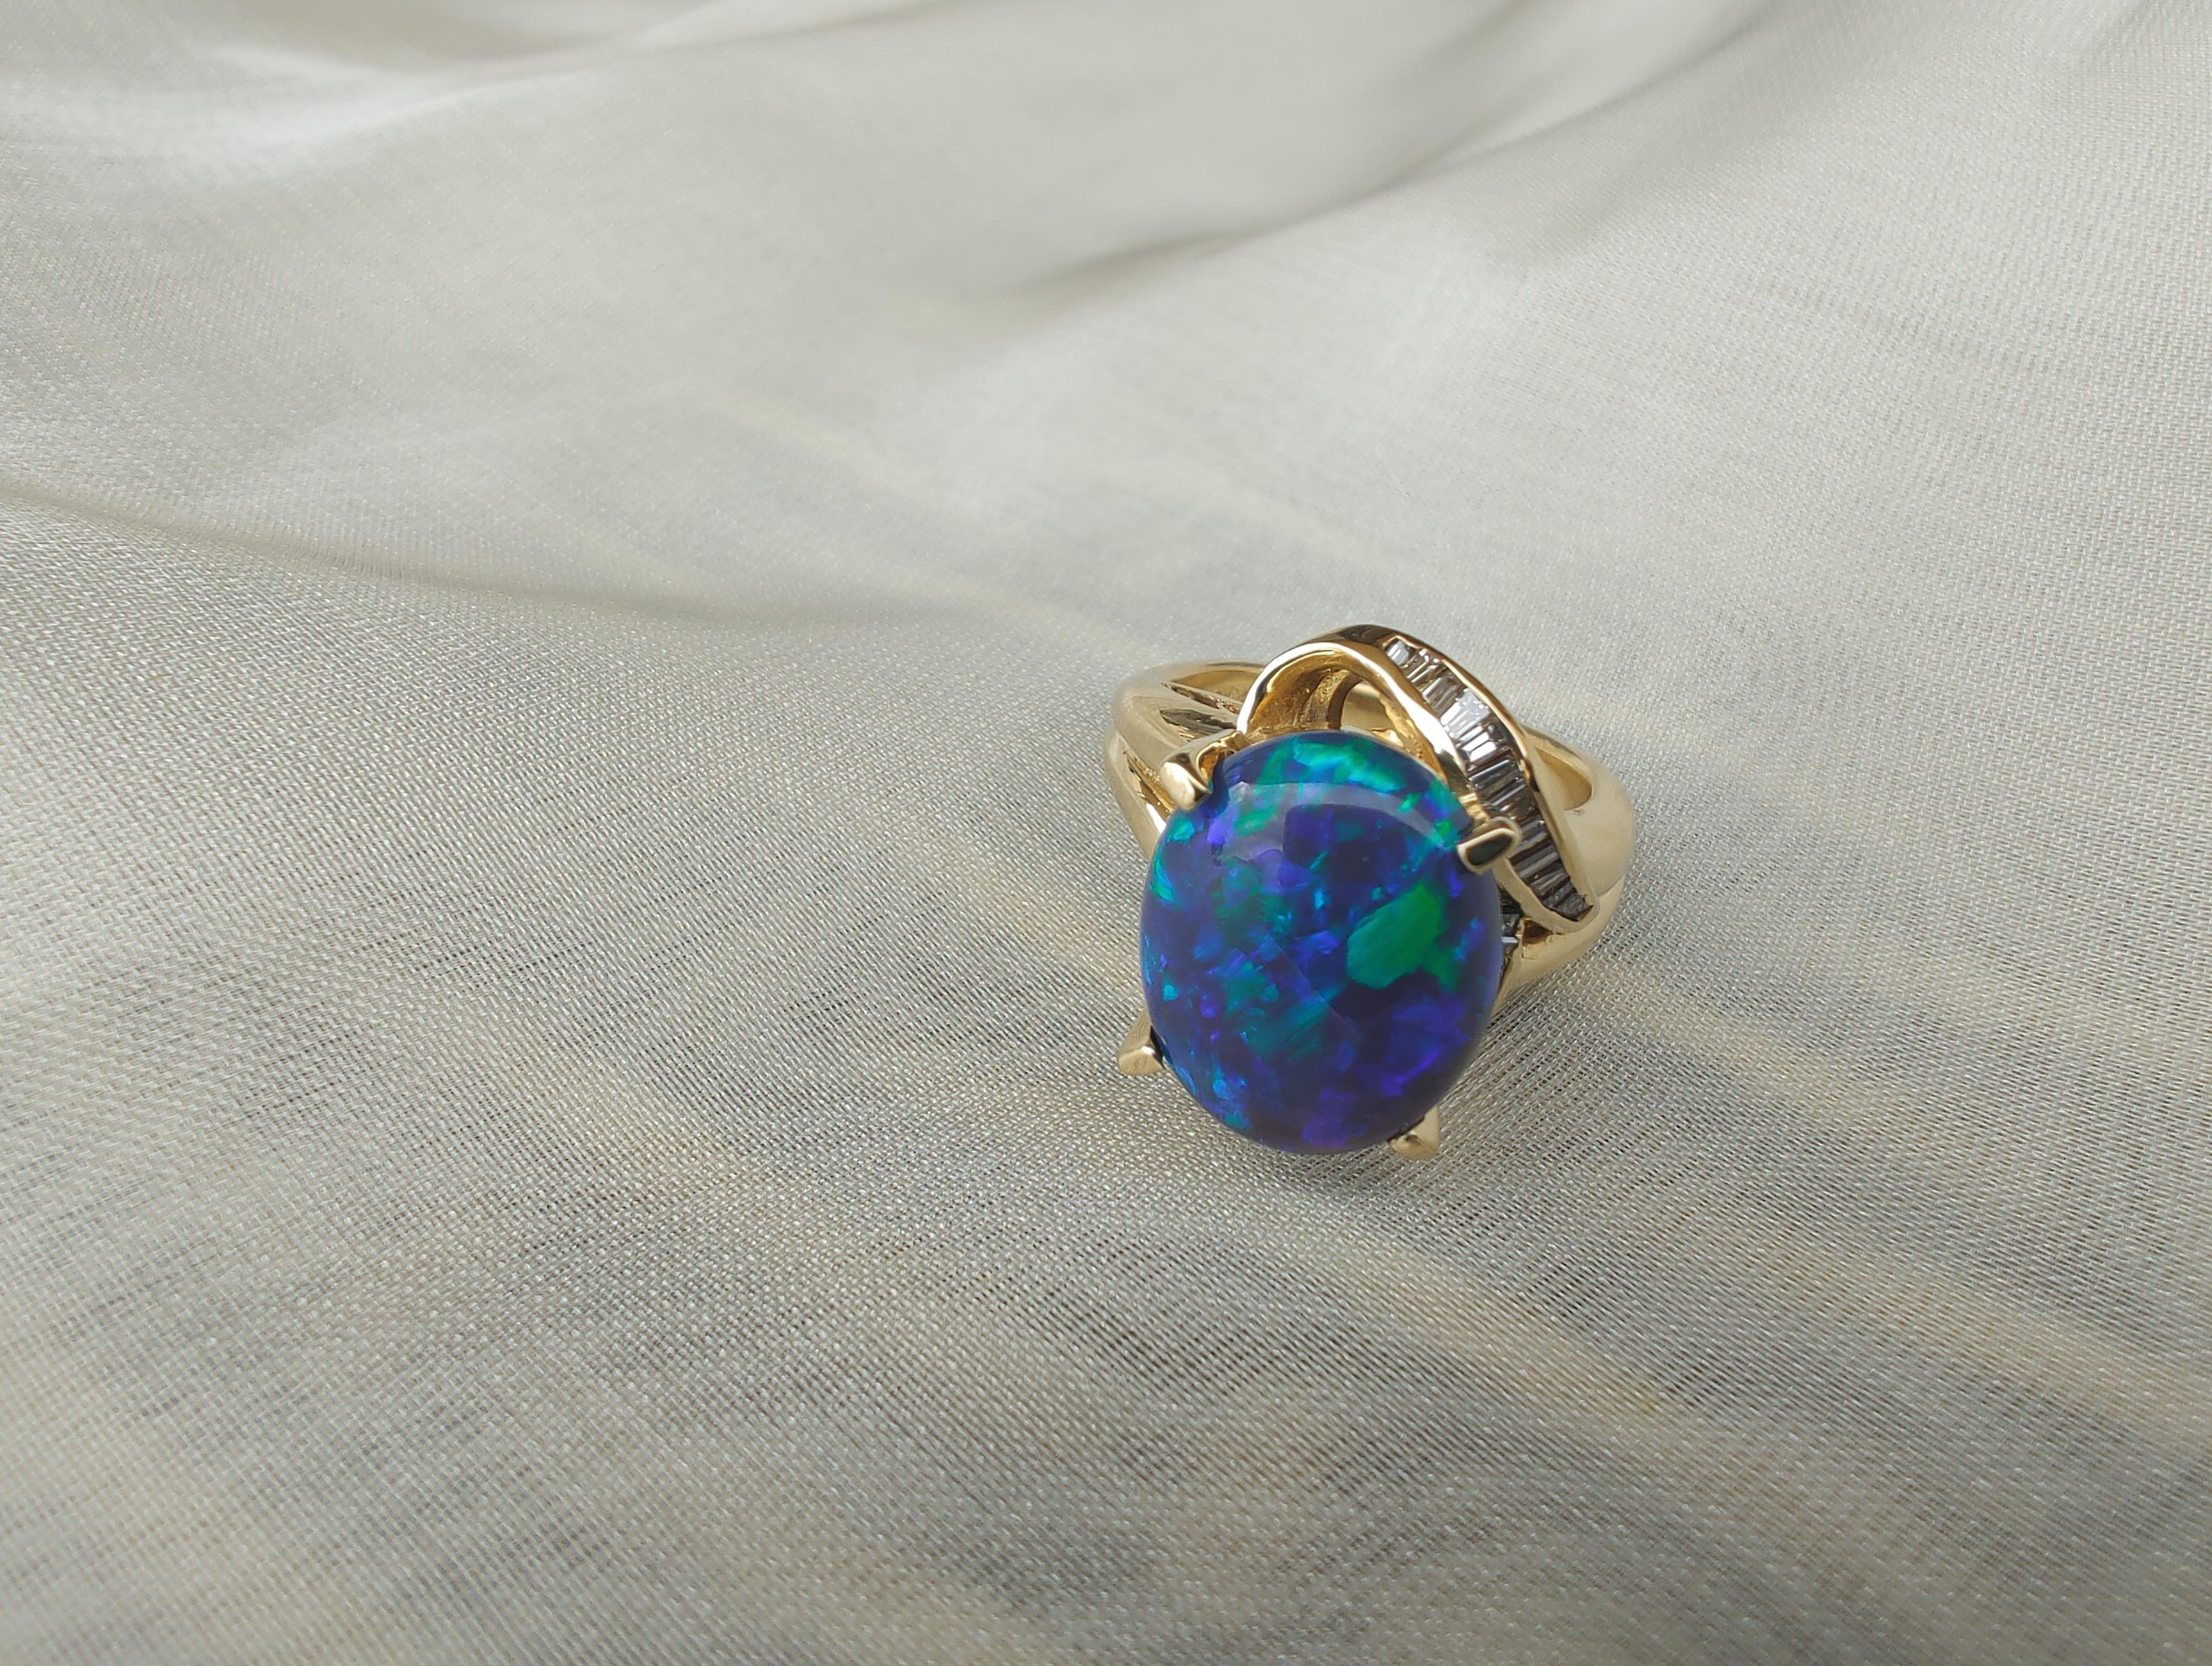 Bague en or jaune 18 carats ornée d'une opale noire (10,8x13,1 mm) et d'un diamant baguette effilé de qualité gemme australienne.
L'opale noire est souvent appelée le 